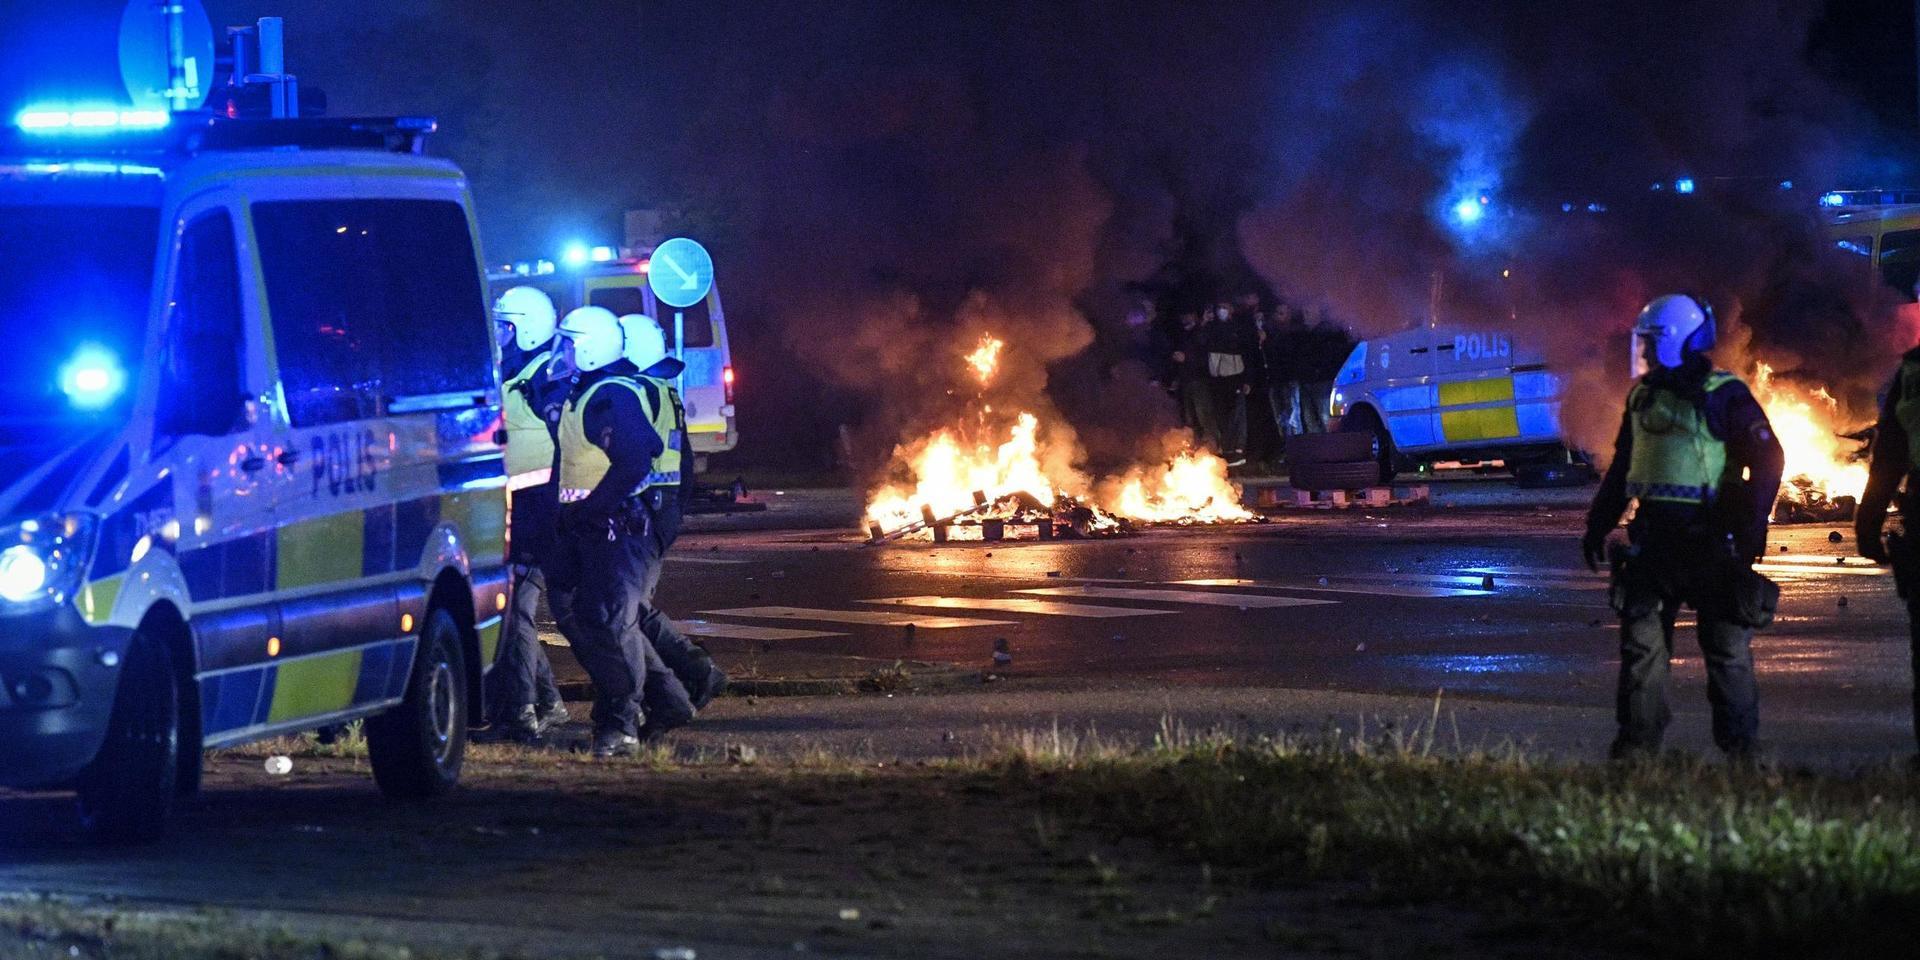 Polis och brinnande lastpallar då fredagens koranbränning har lett till omfattande protester och oroligheter i Rosengård. 